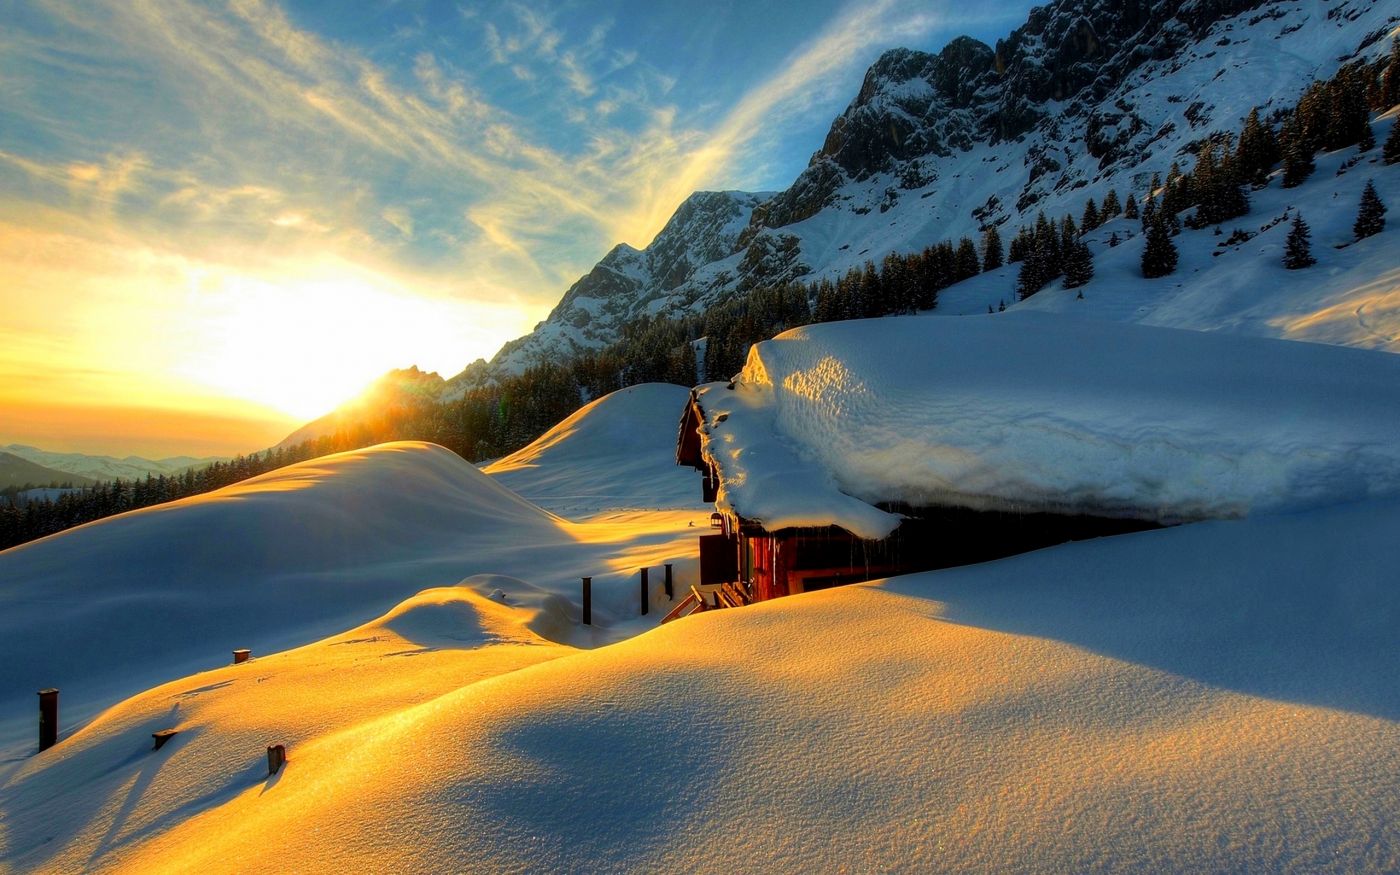 高清晰美冬雪景桌面壁纸下载 手机移动版